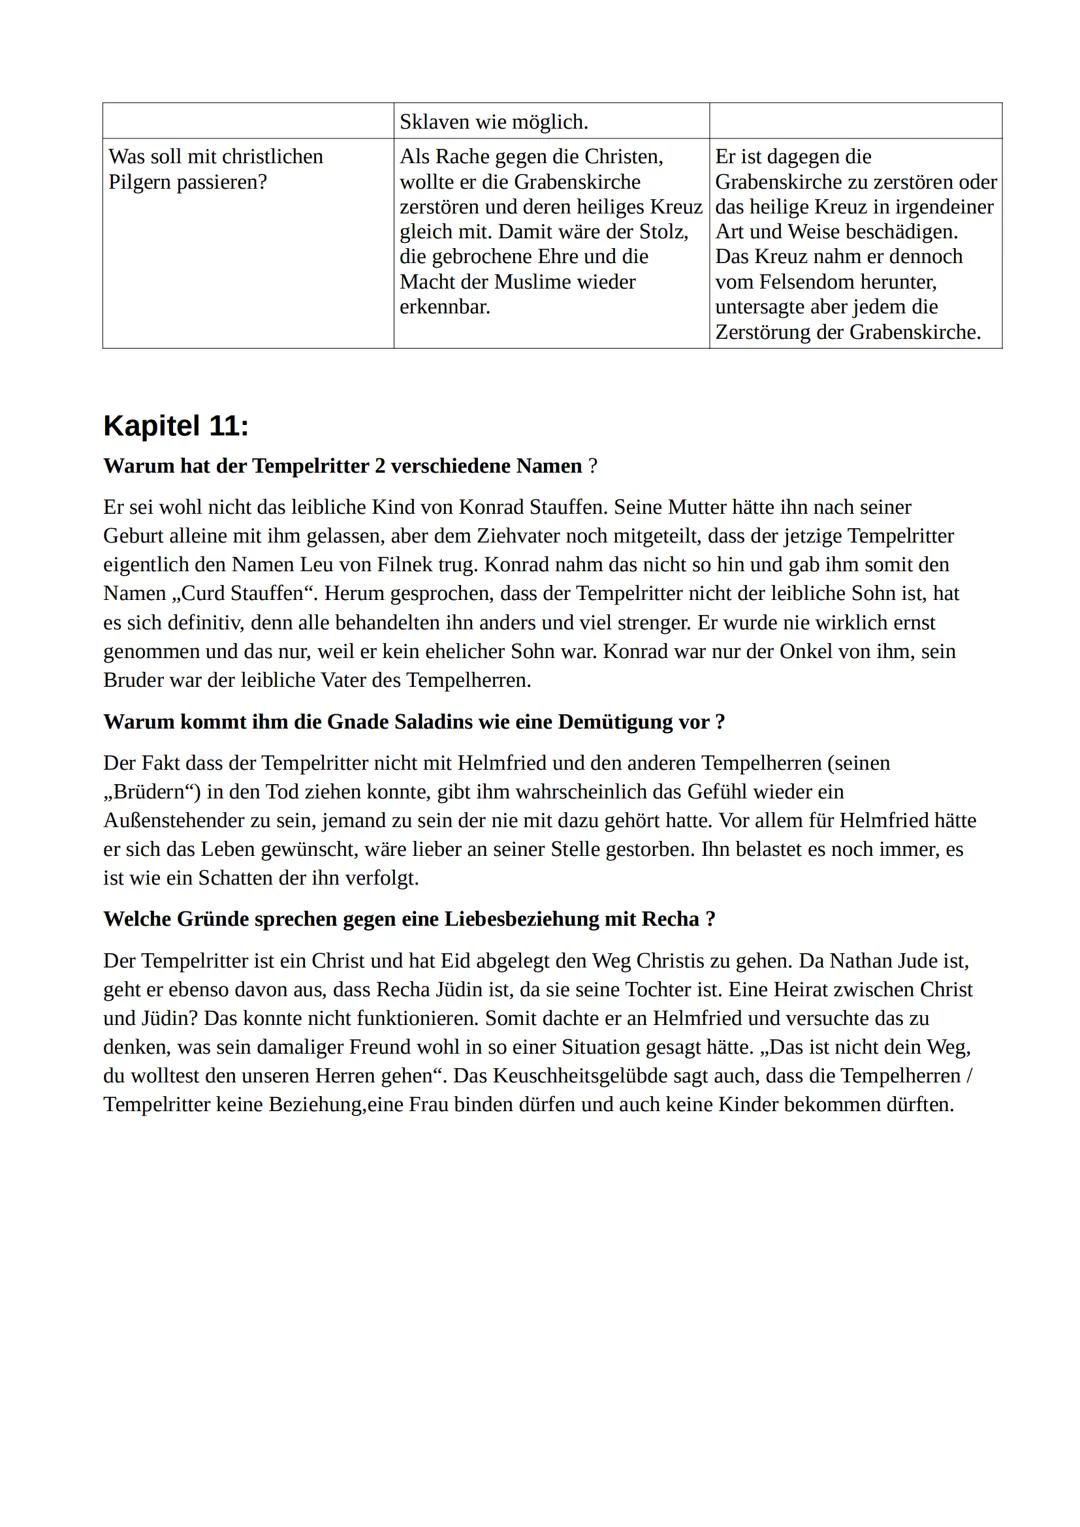 Kapitelübersicht
Kapitel
1.Kapitel/ Seite 9
2.Kapitel/ Seite 24
3.Kapitel/ Seite 41
4.Kapitel/ Seite 55
5.Kapitel/ Seite 67
6.Kapitel/ Seite